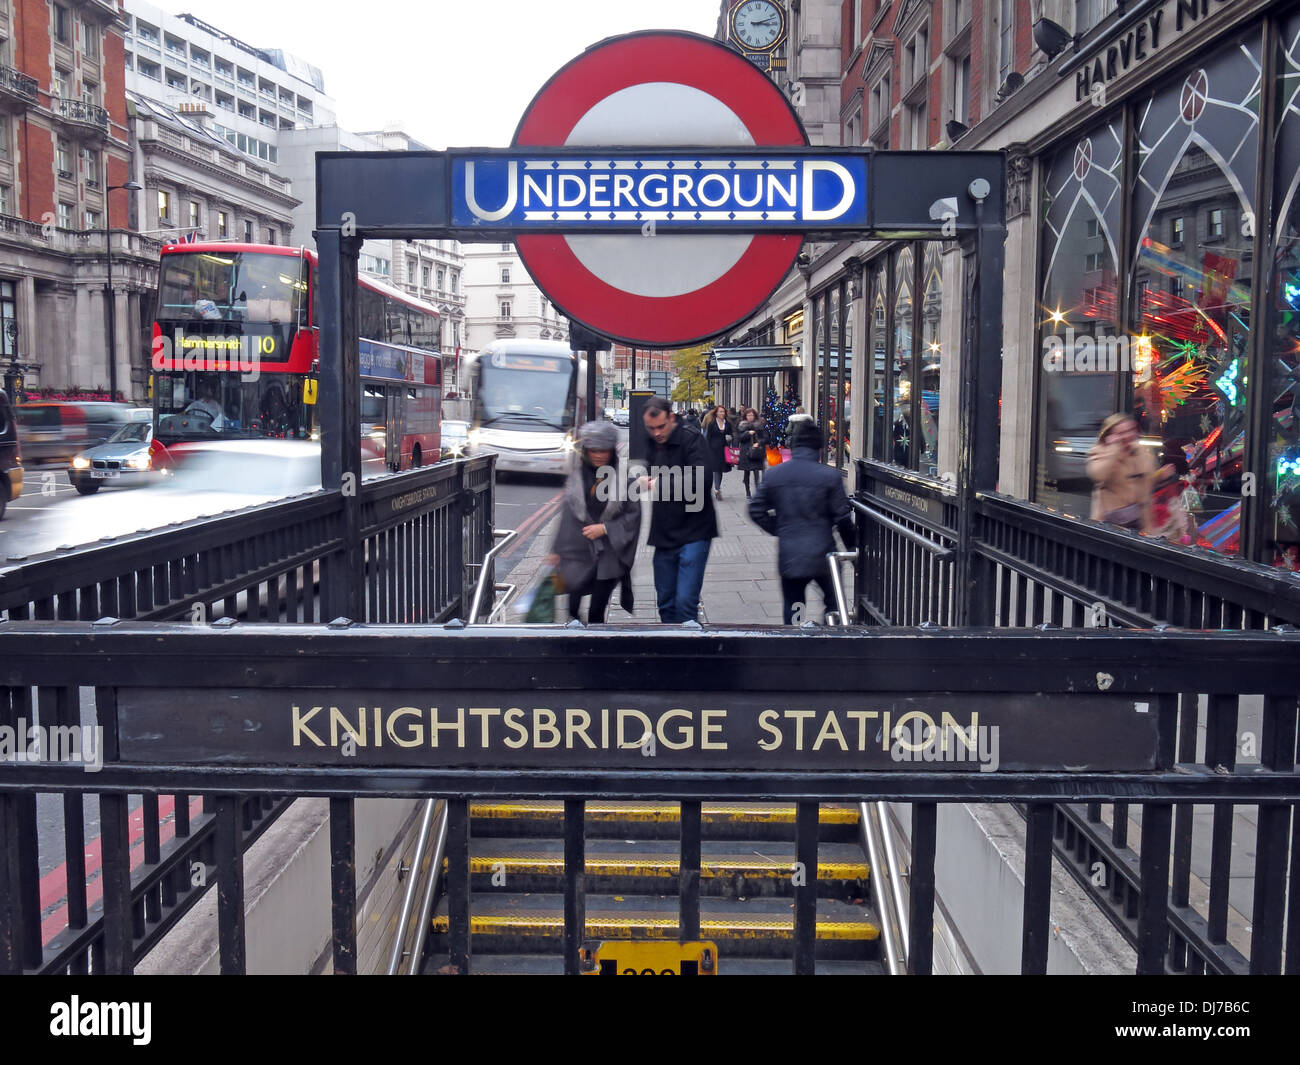 Knightsbridge station London Underground subway England UK Stock Photo